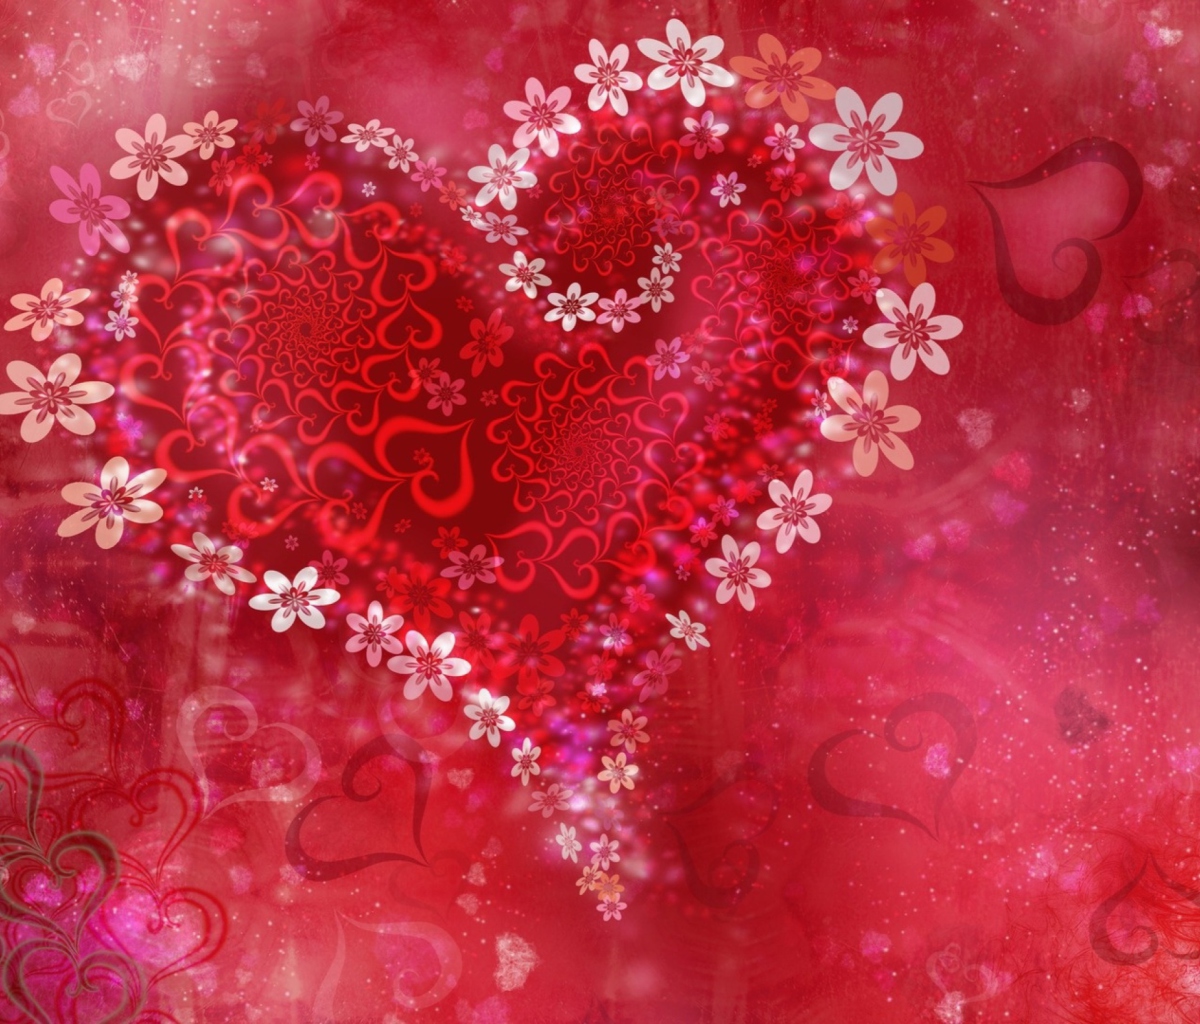 Das Love Heart Flowers Wallpaper 1200x1024